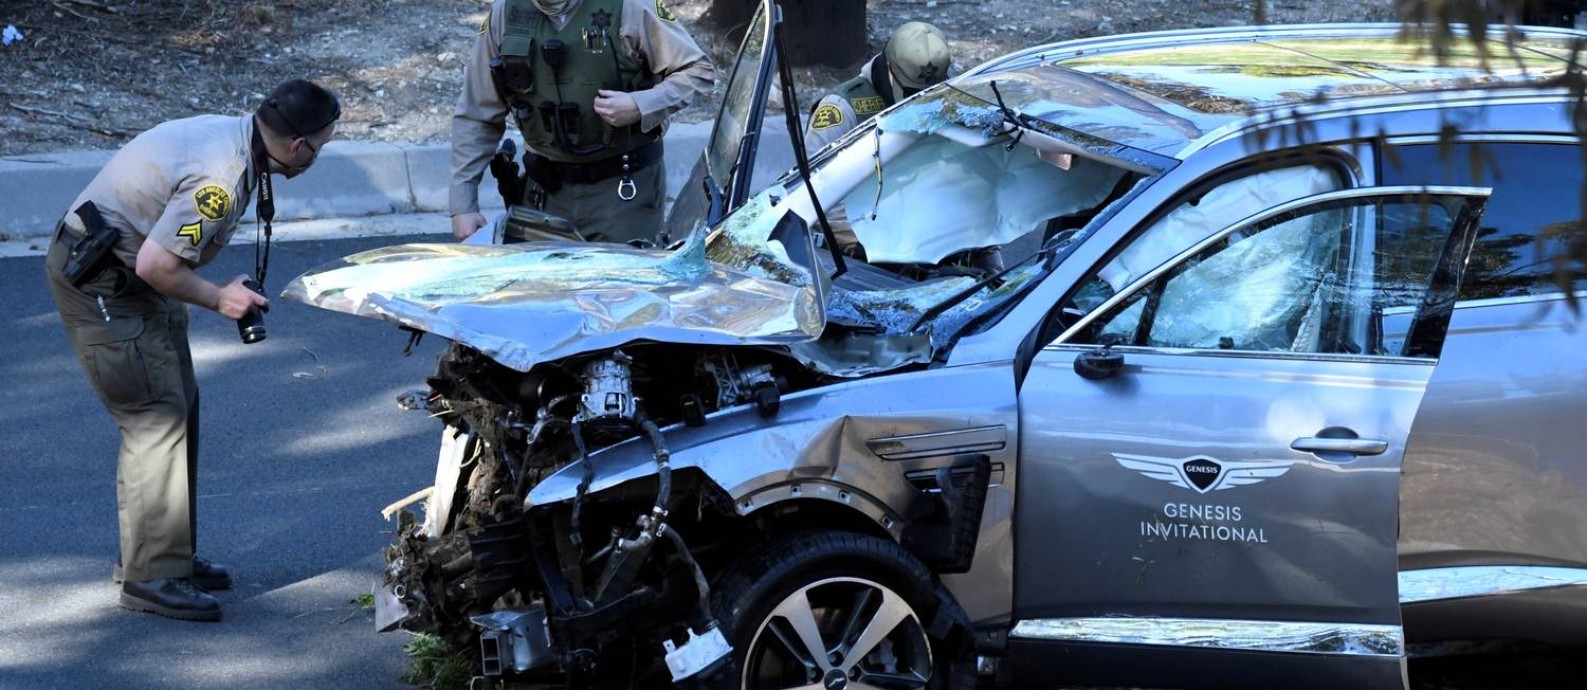 Parte frontal do carro de Woods ficou destruída Foto: GENE BLEVINS / REUTERS